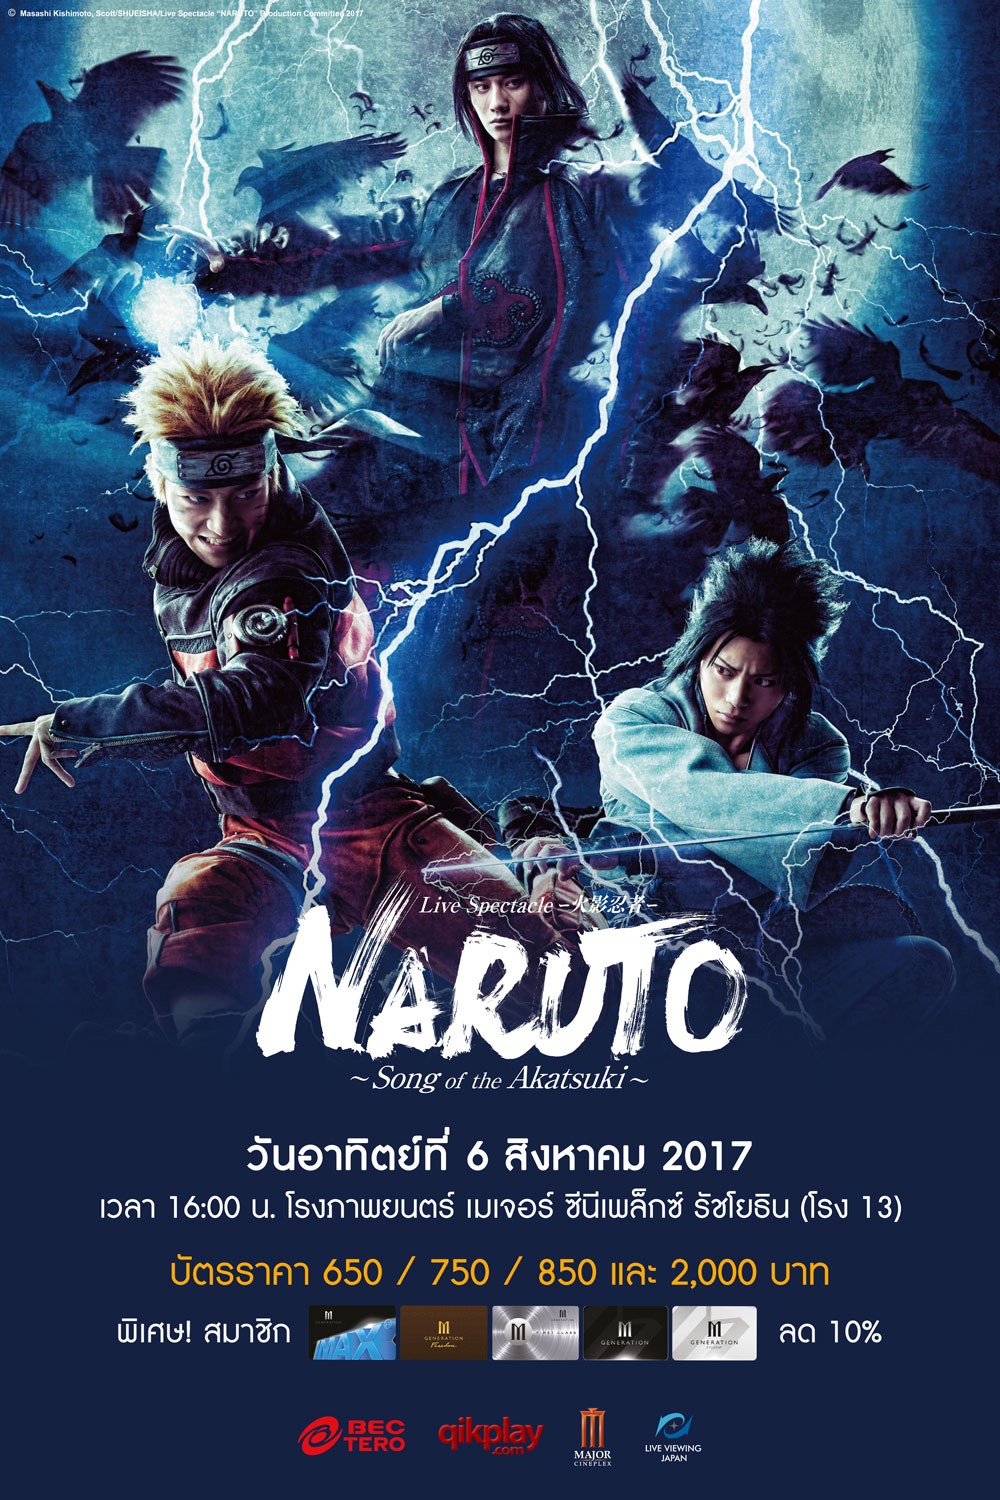 Naruto_Poster_Thai (1) (1)